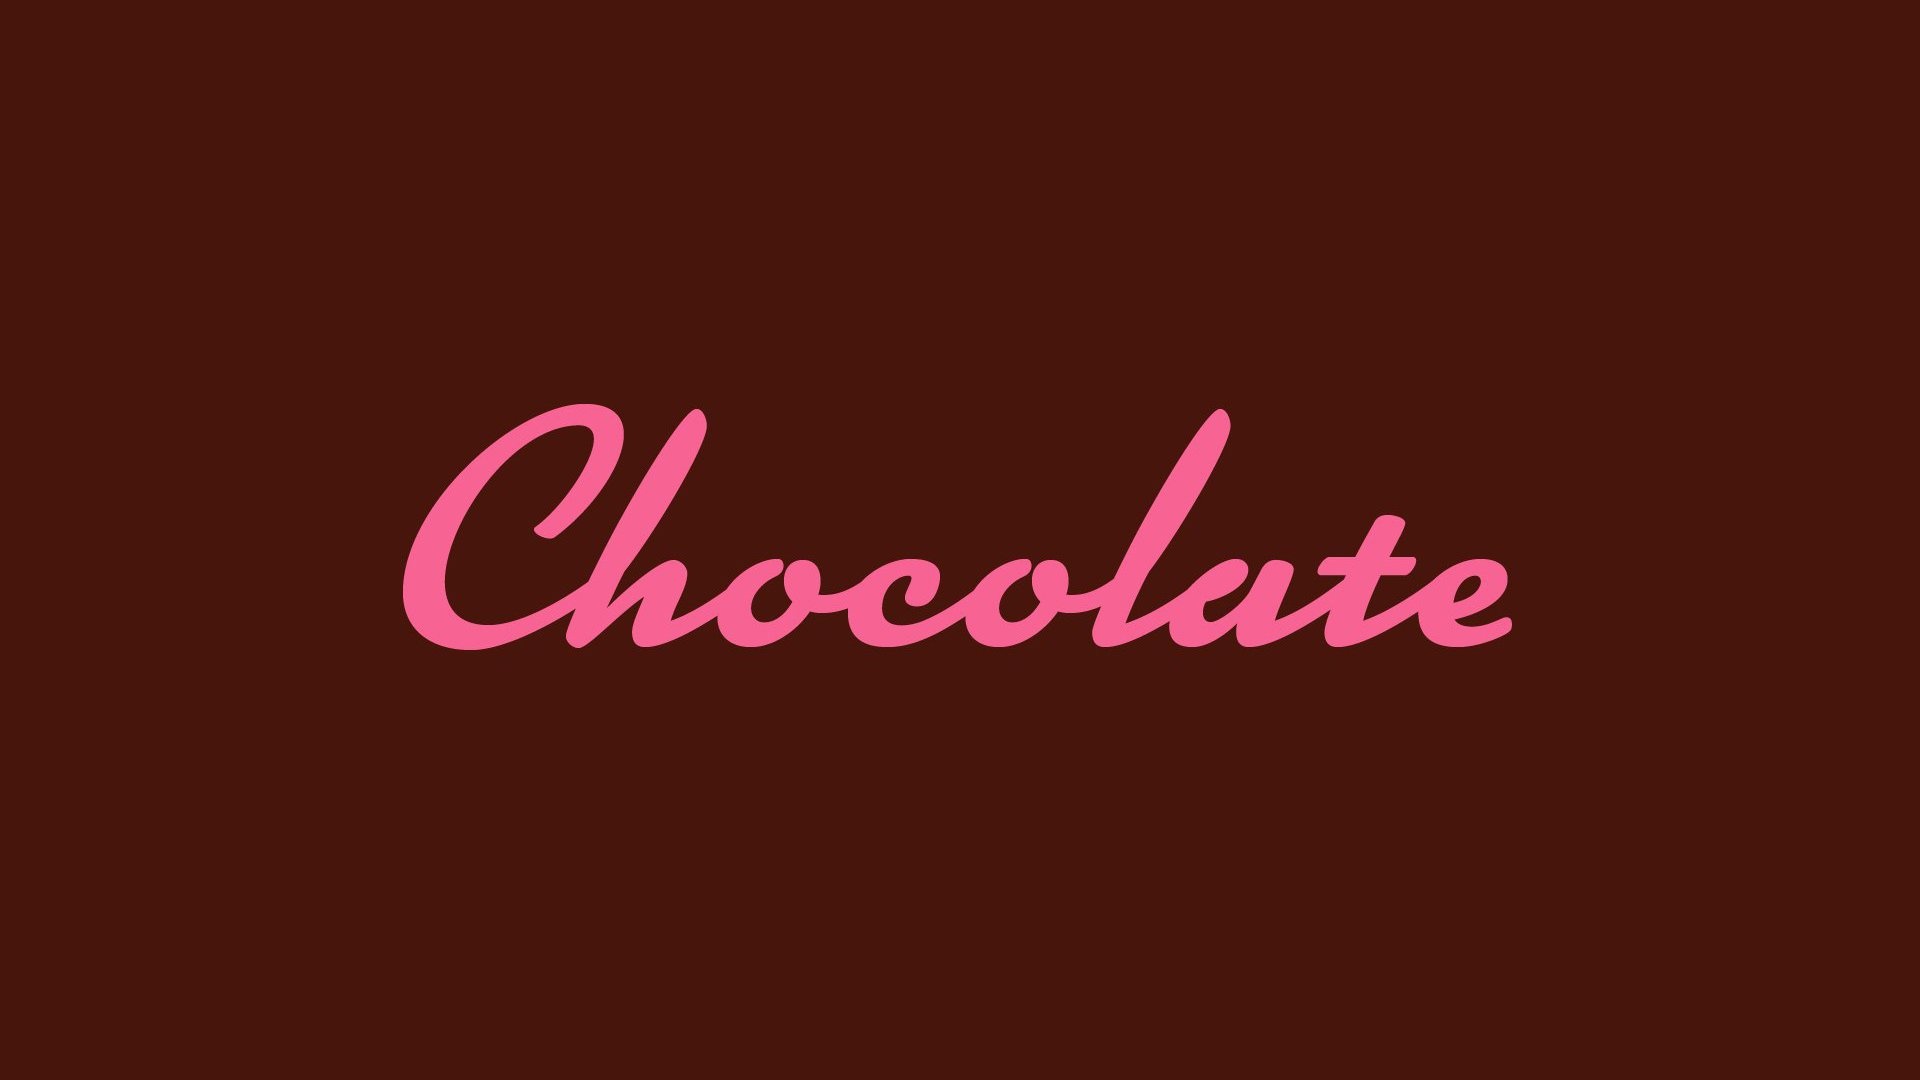 巧克力和可可碎的文字徽章 向量例证. 插画 包括有 有机, 设计, 背包, 程序包, 艺术, 图象, 徽标 - 205032213